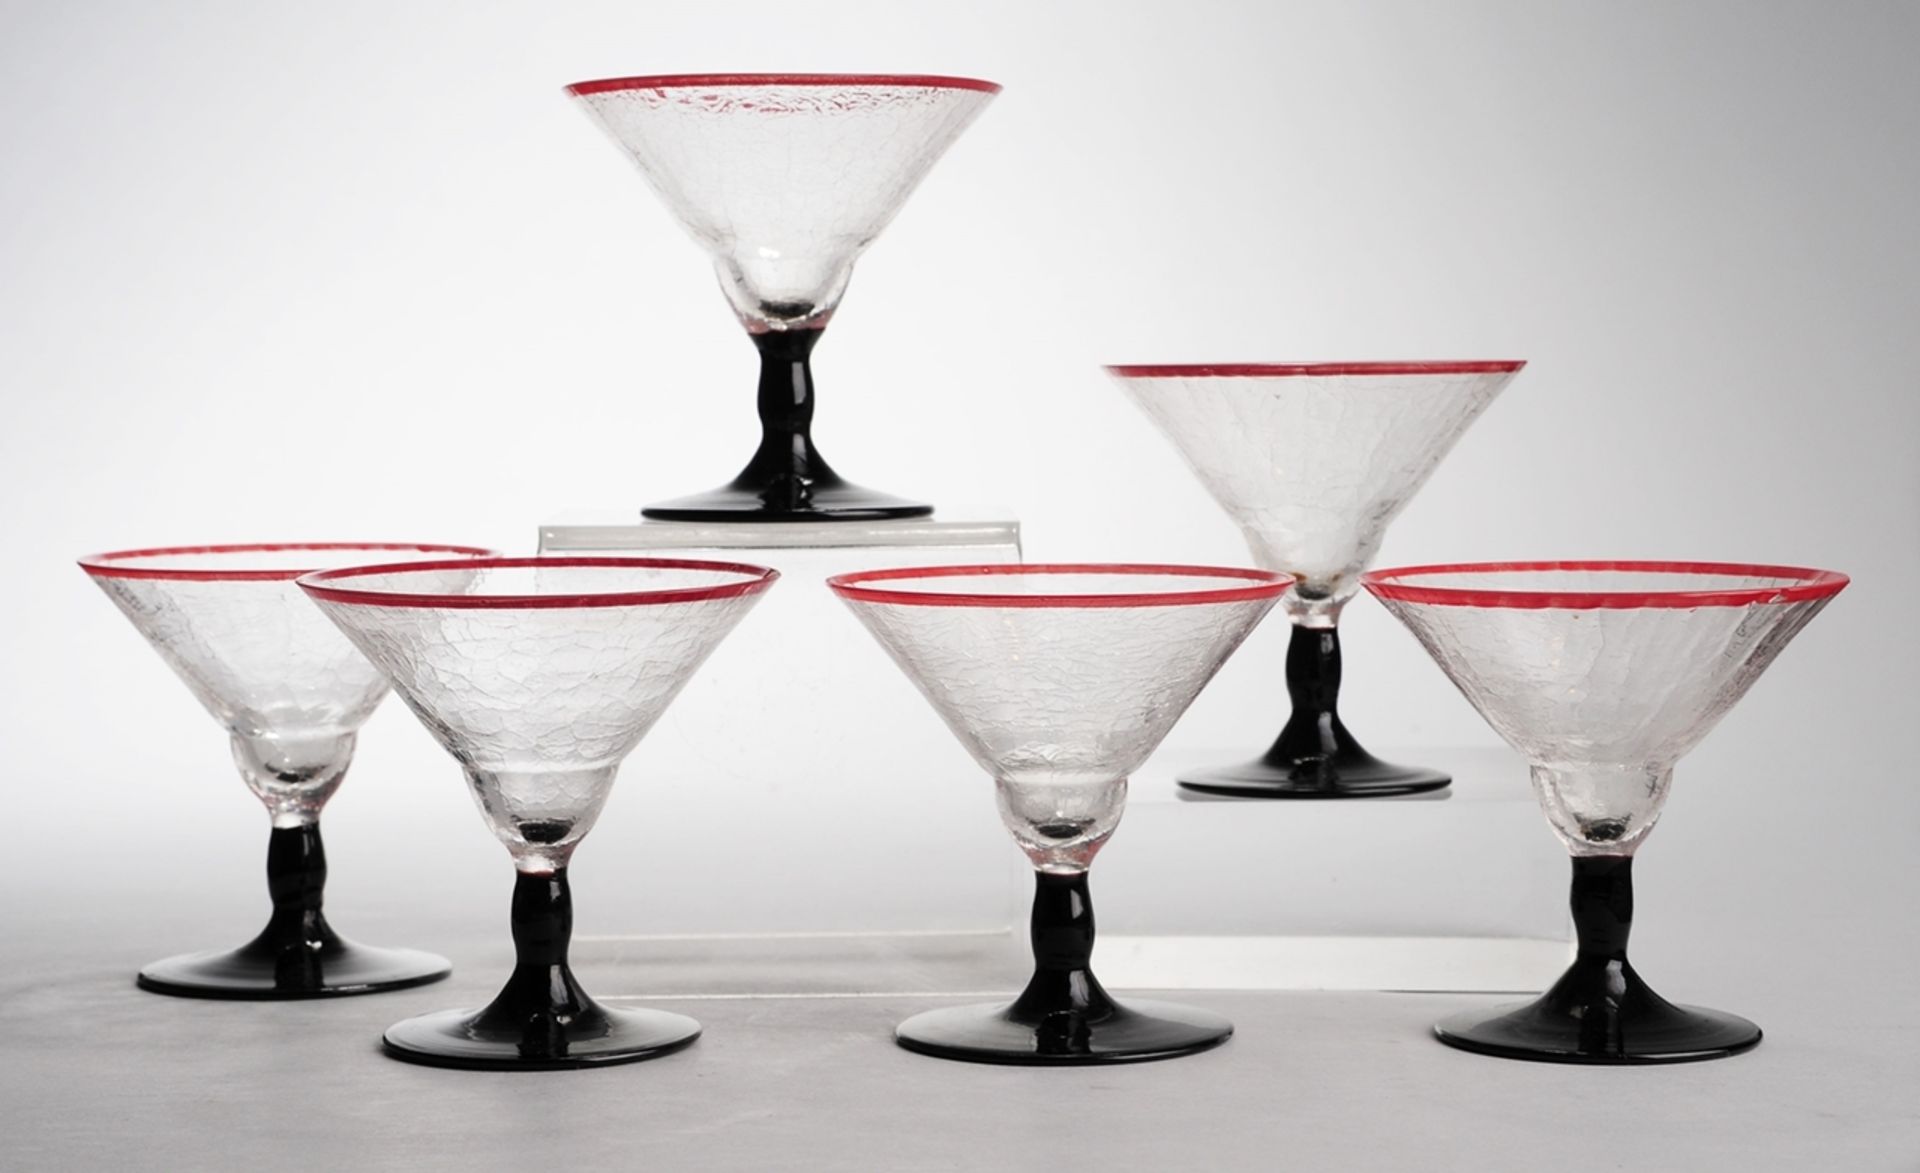 Sechs Art-Déco-LikörkelcheFarbloses Glas mit krakelierter Oberfläche, schwarzes Opalglas.